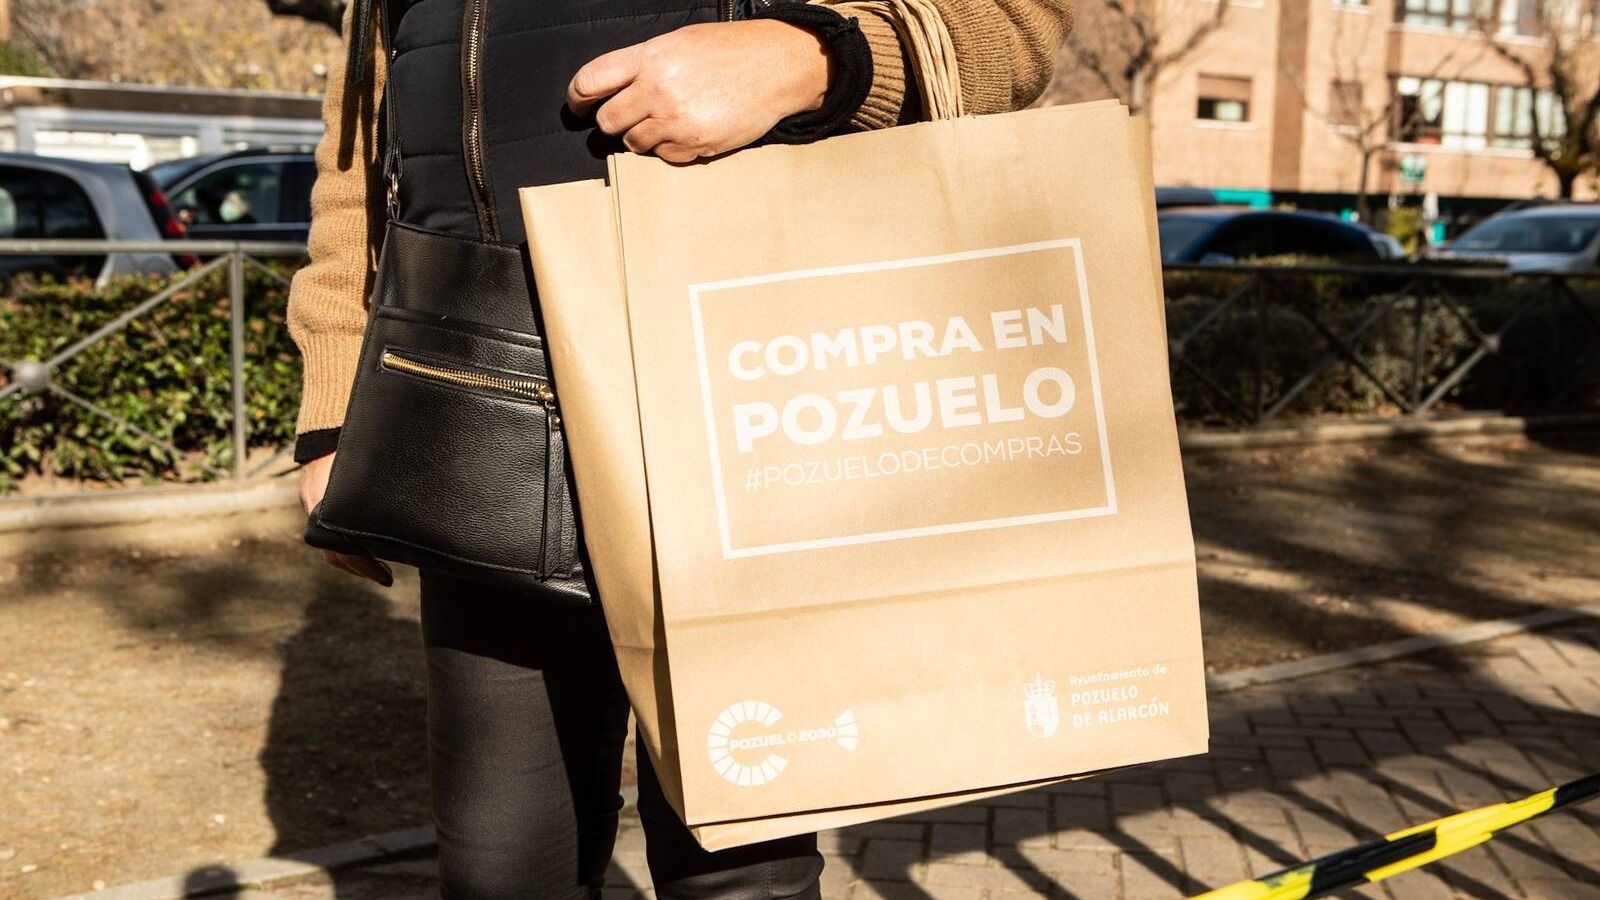 Nuevo reparto de bolsas de papel ecológicas a los comercios de Pozuelo